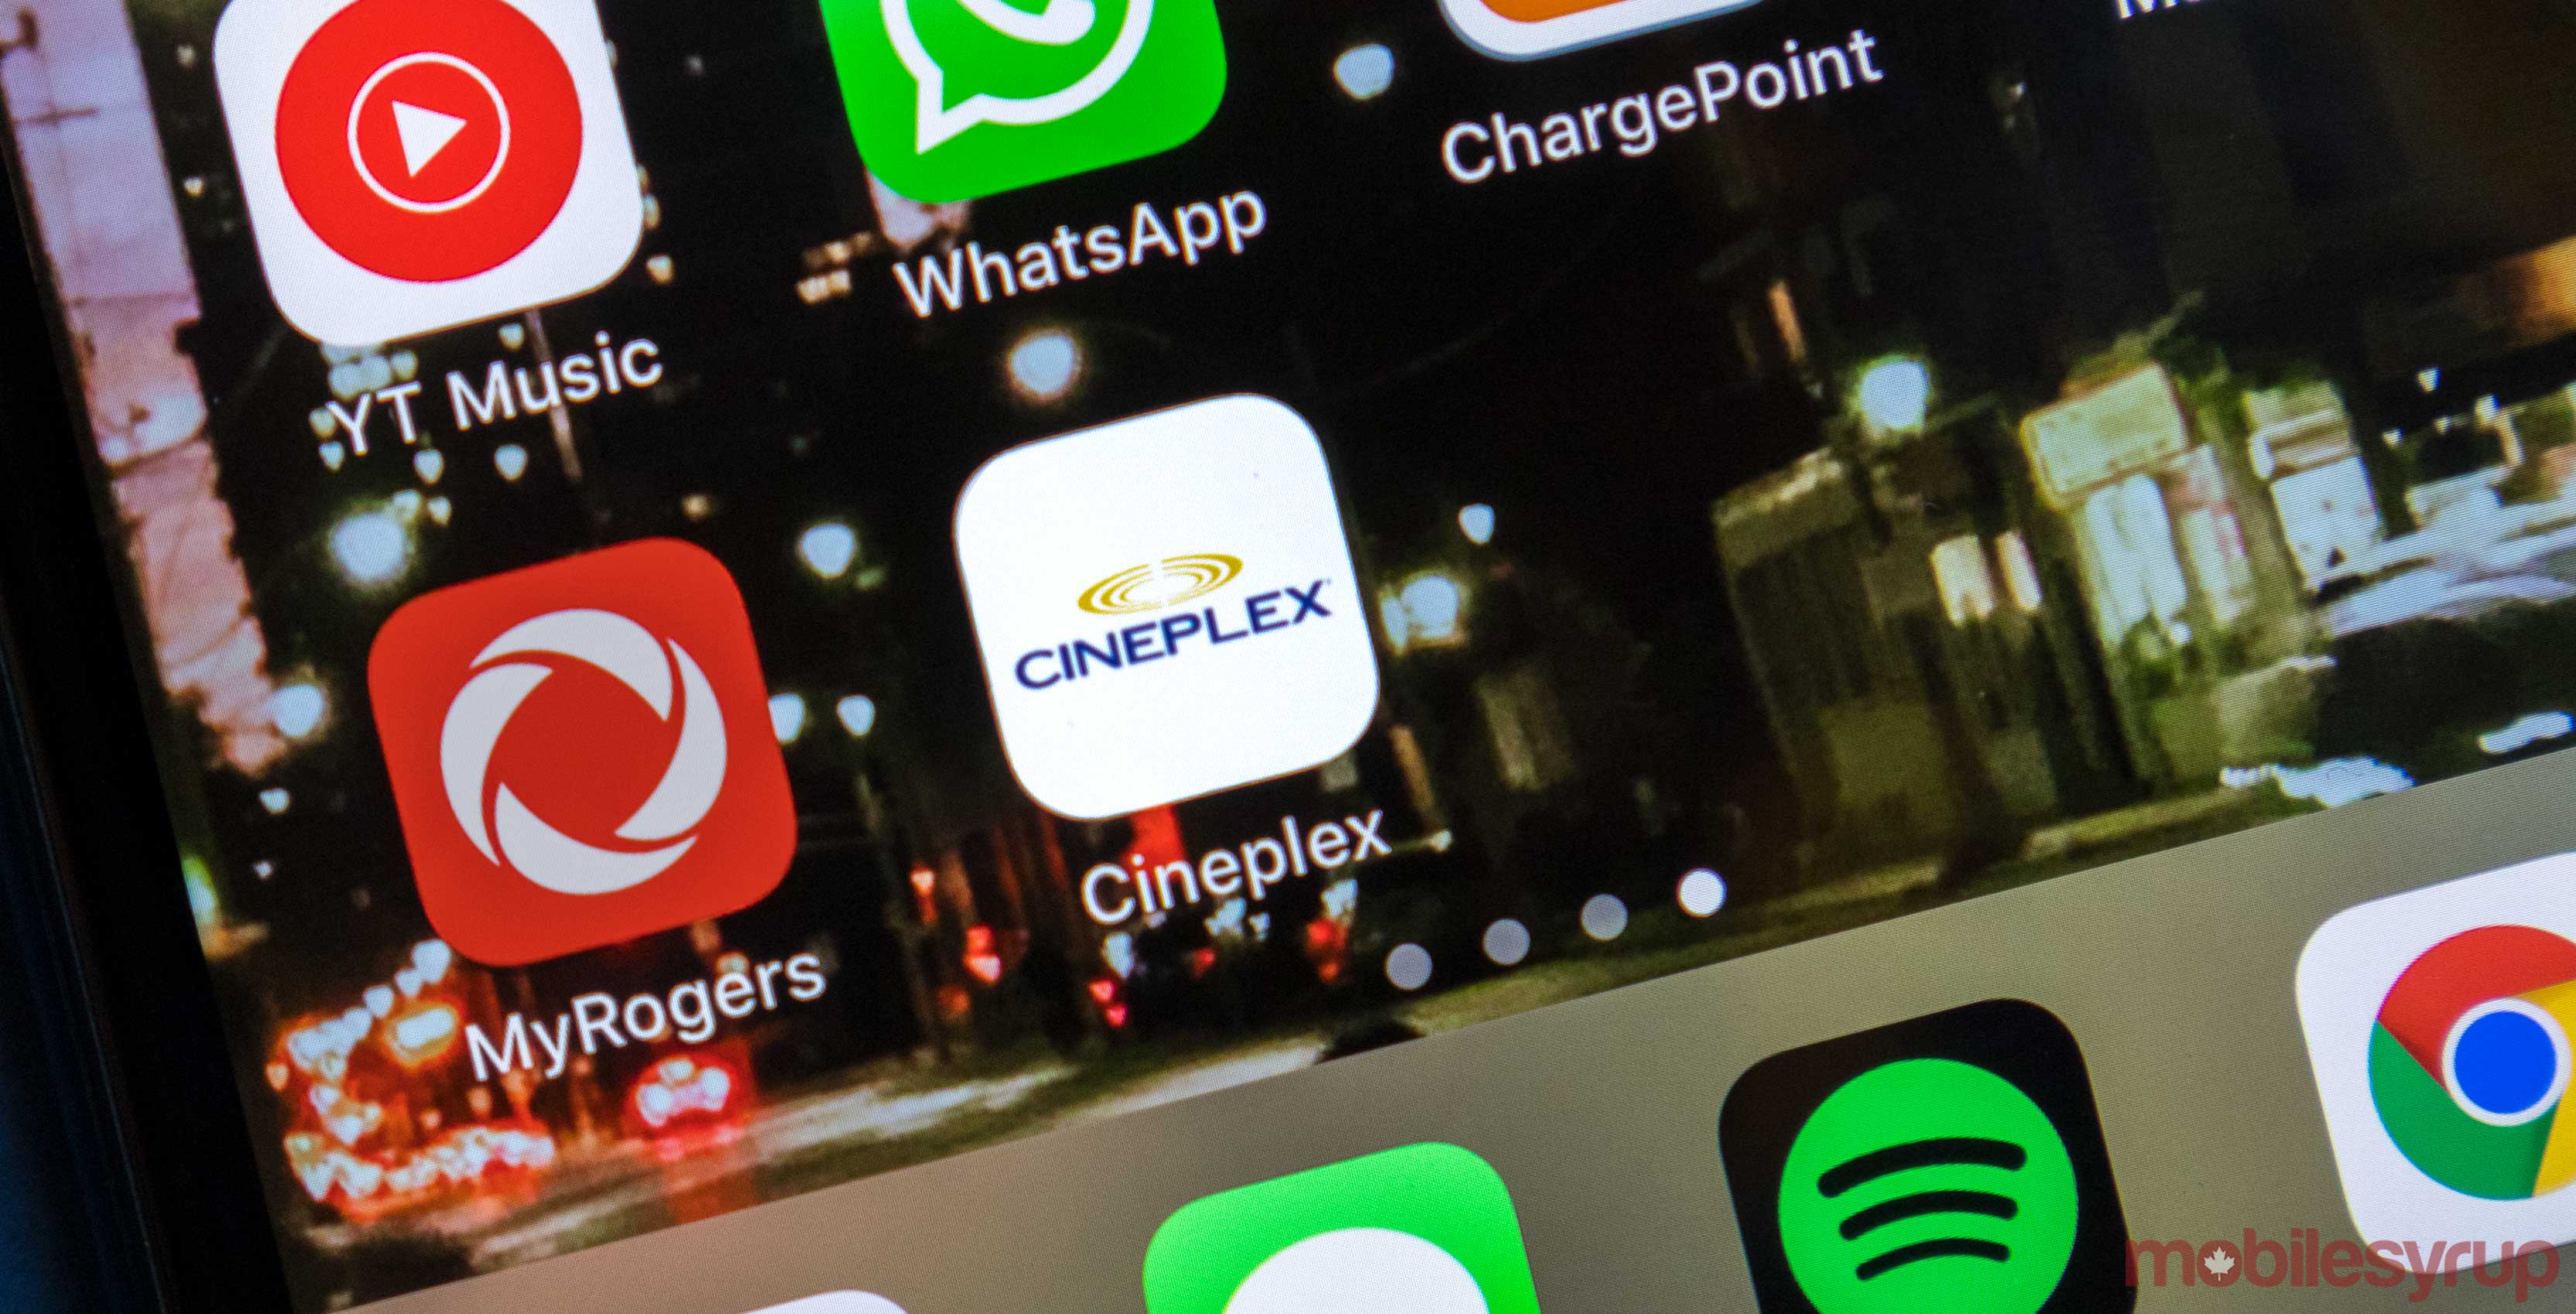 Cineplex app on iPhone